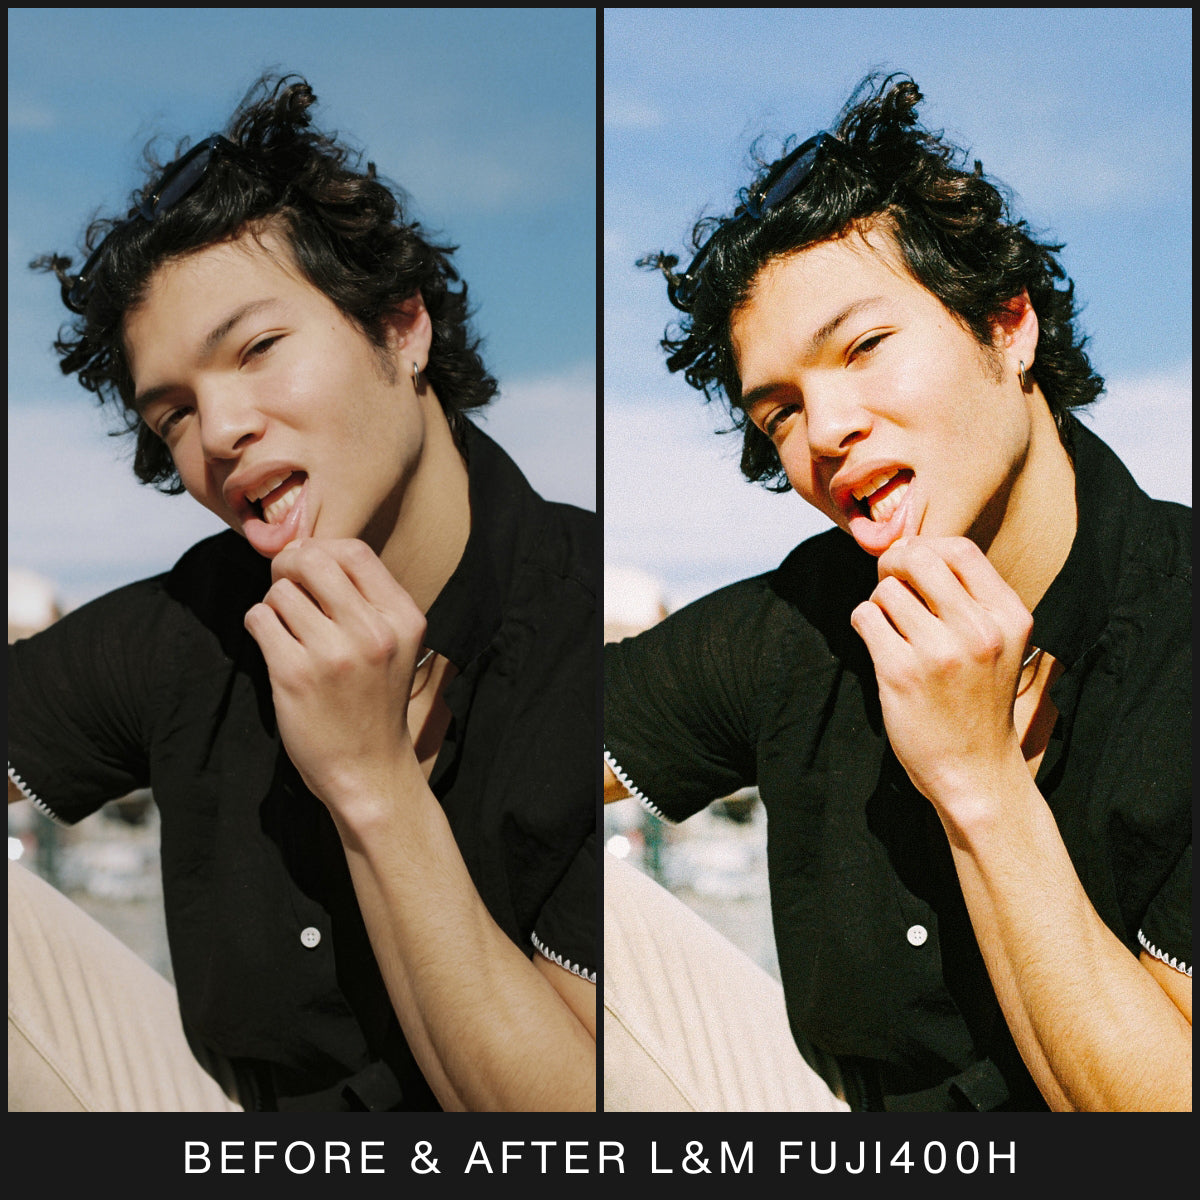  FujiFilm Film Filter Lightroom Presets For Adobe Lightroom Mobile & Desktop By Lou And Marks Presets Portrait